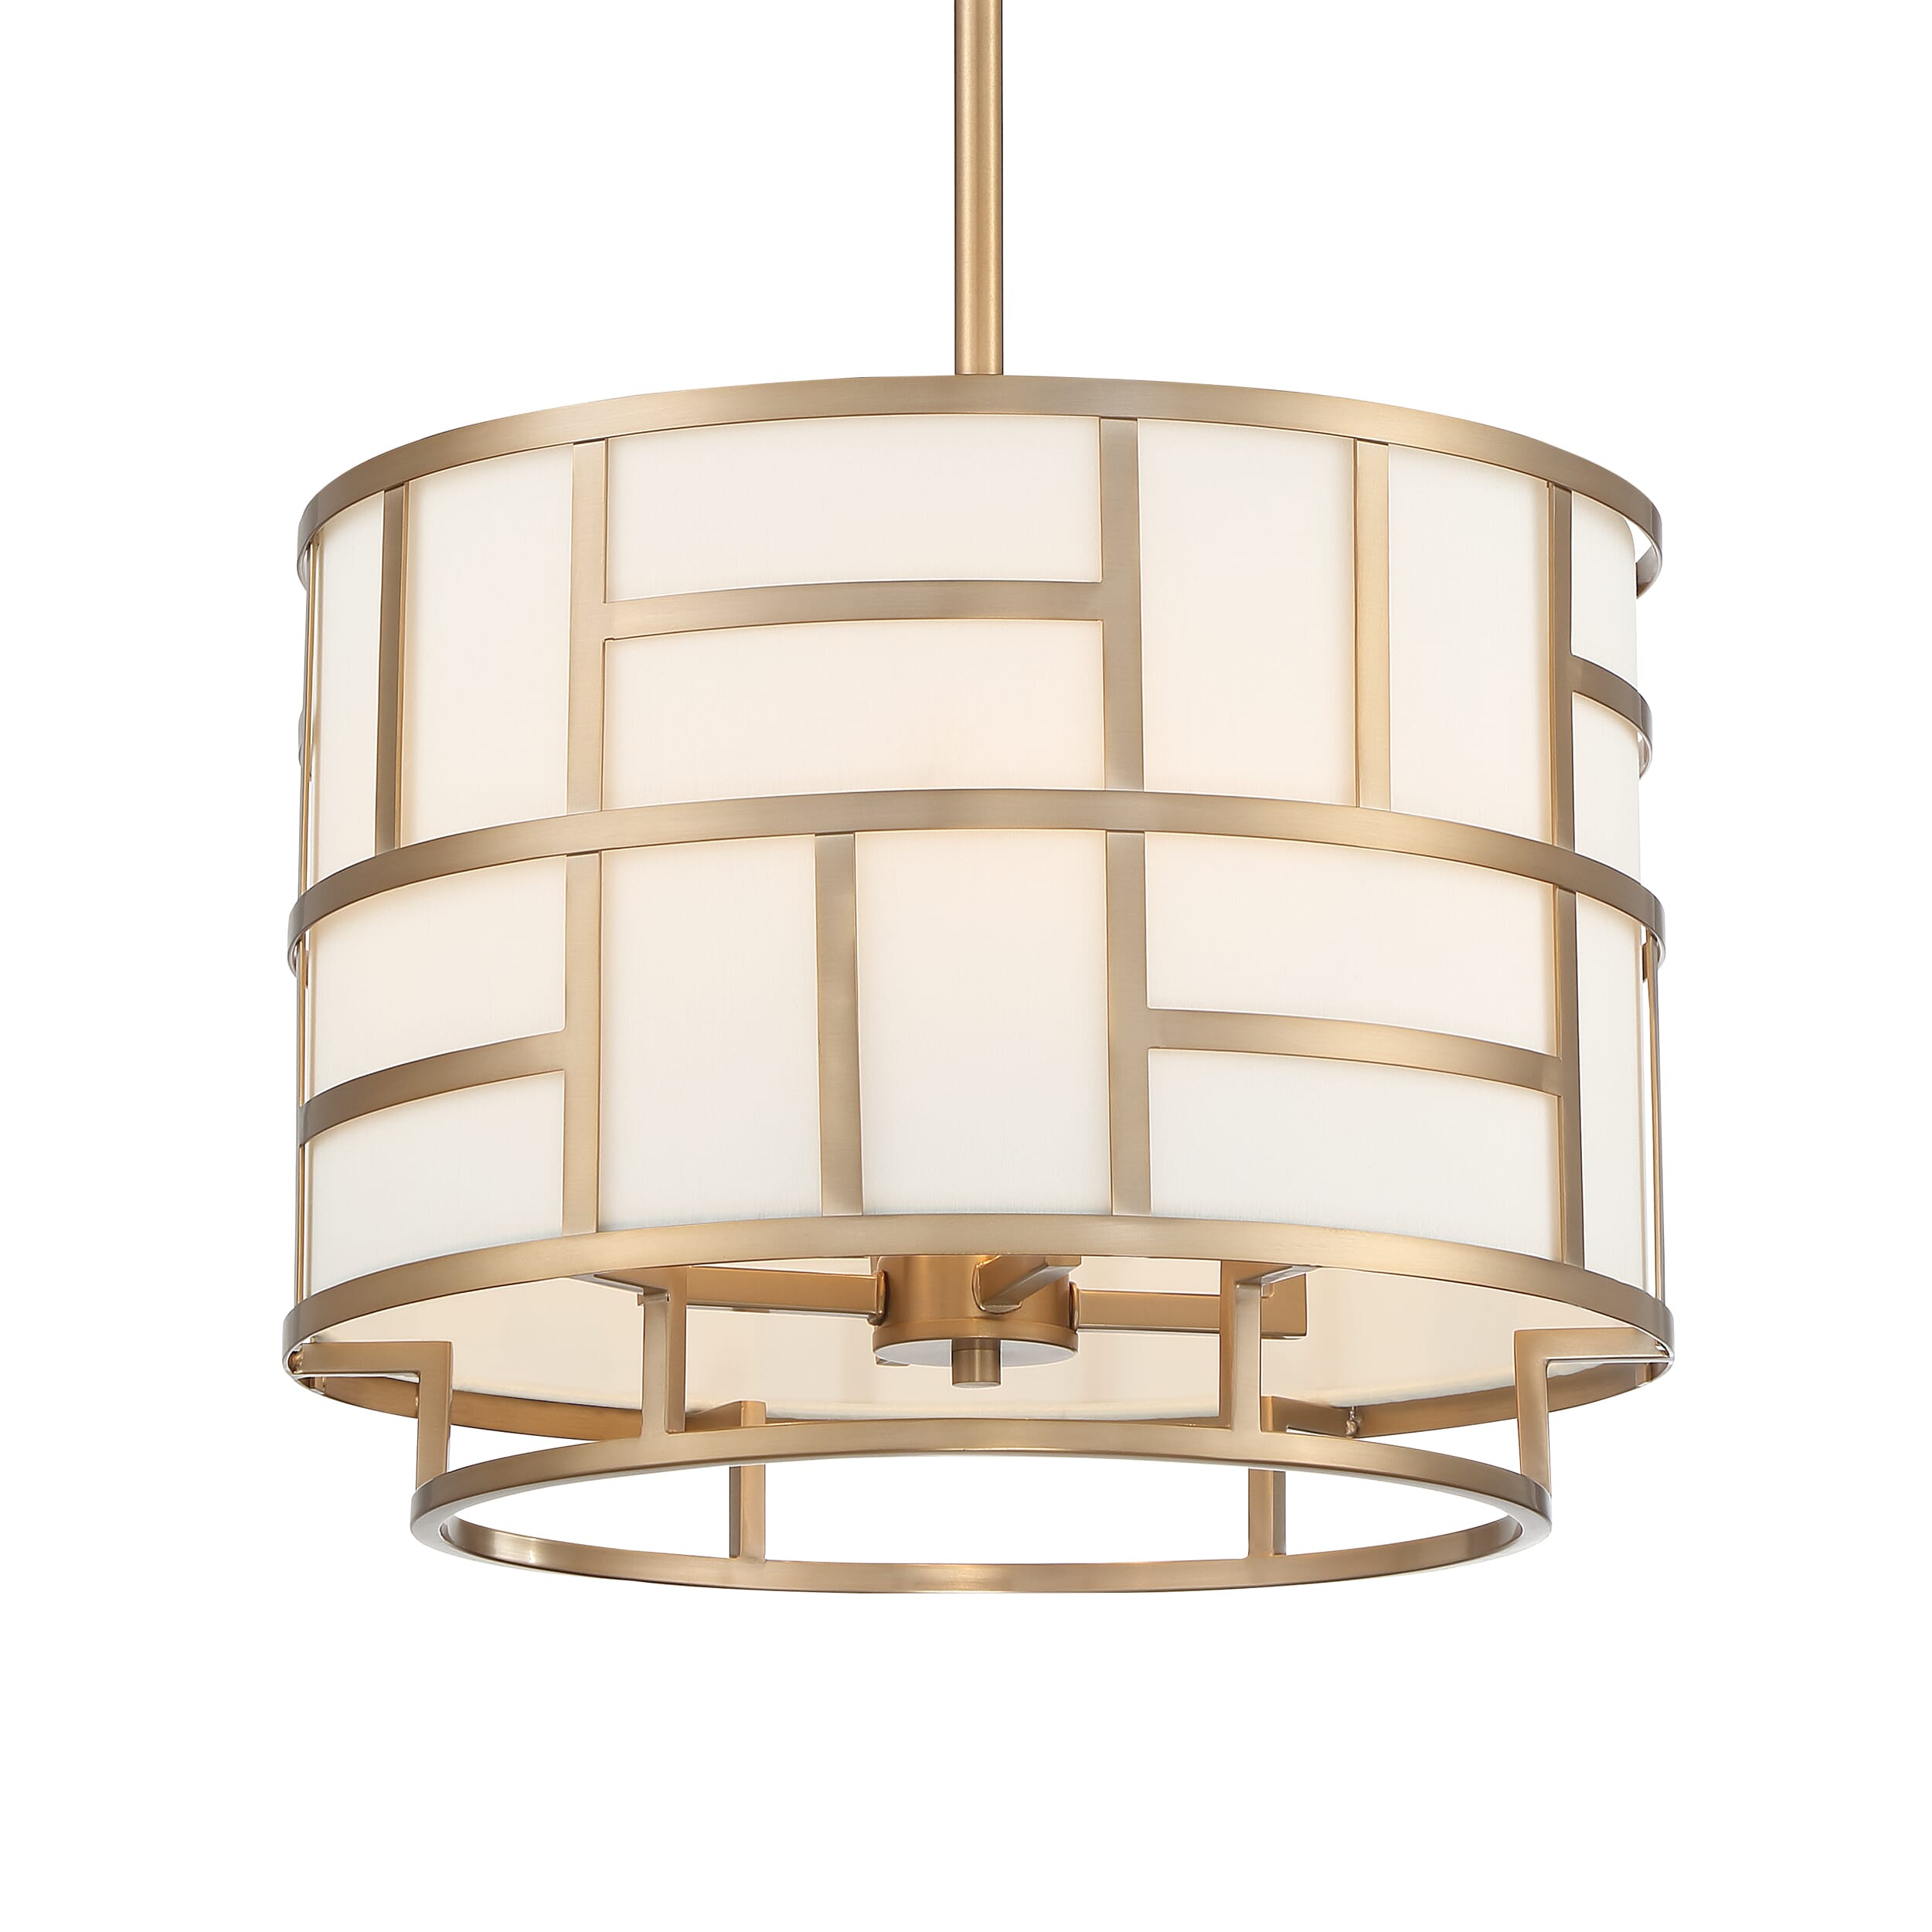 Art Deco Lighting: Style Roundup - LightsOnline Blog